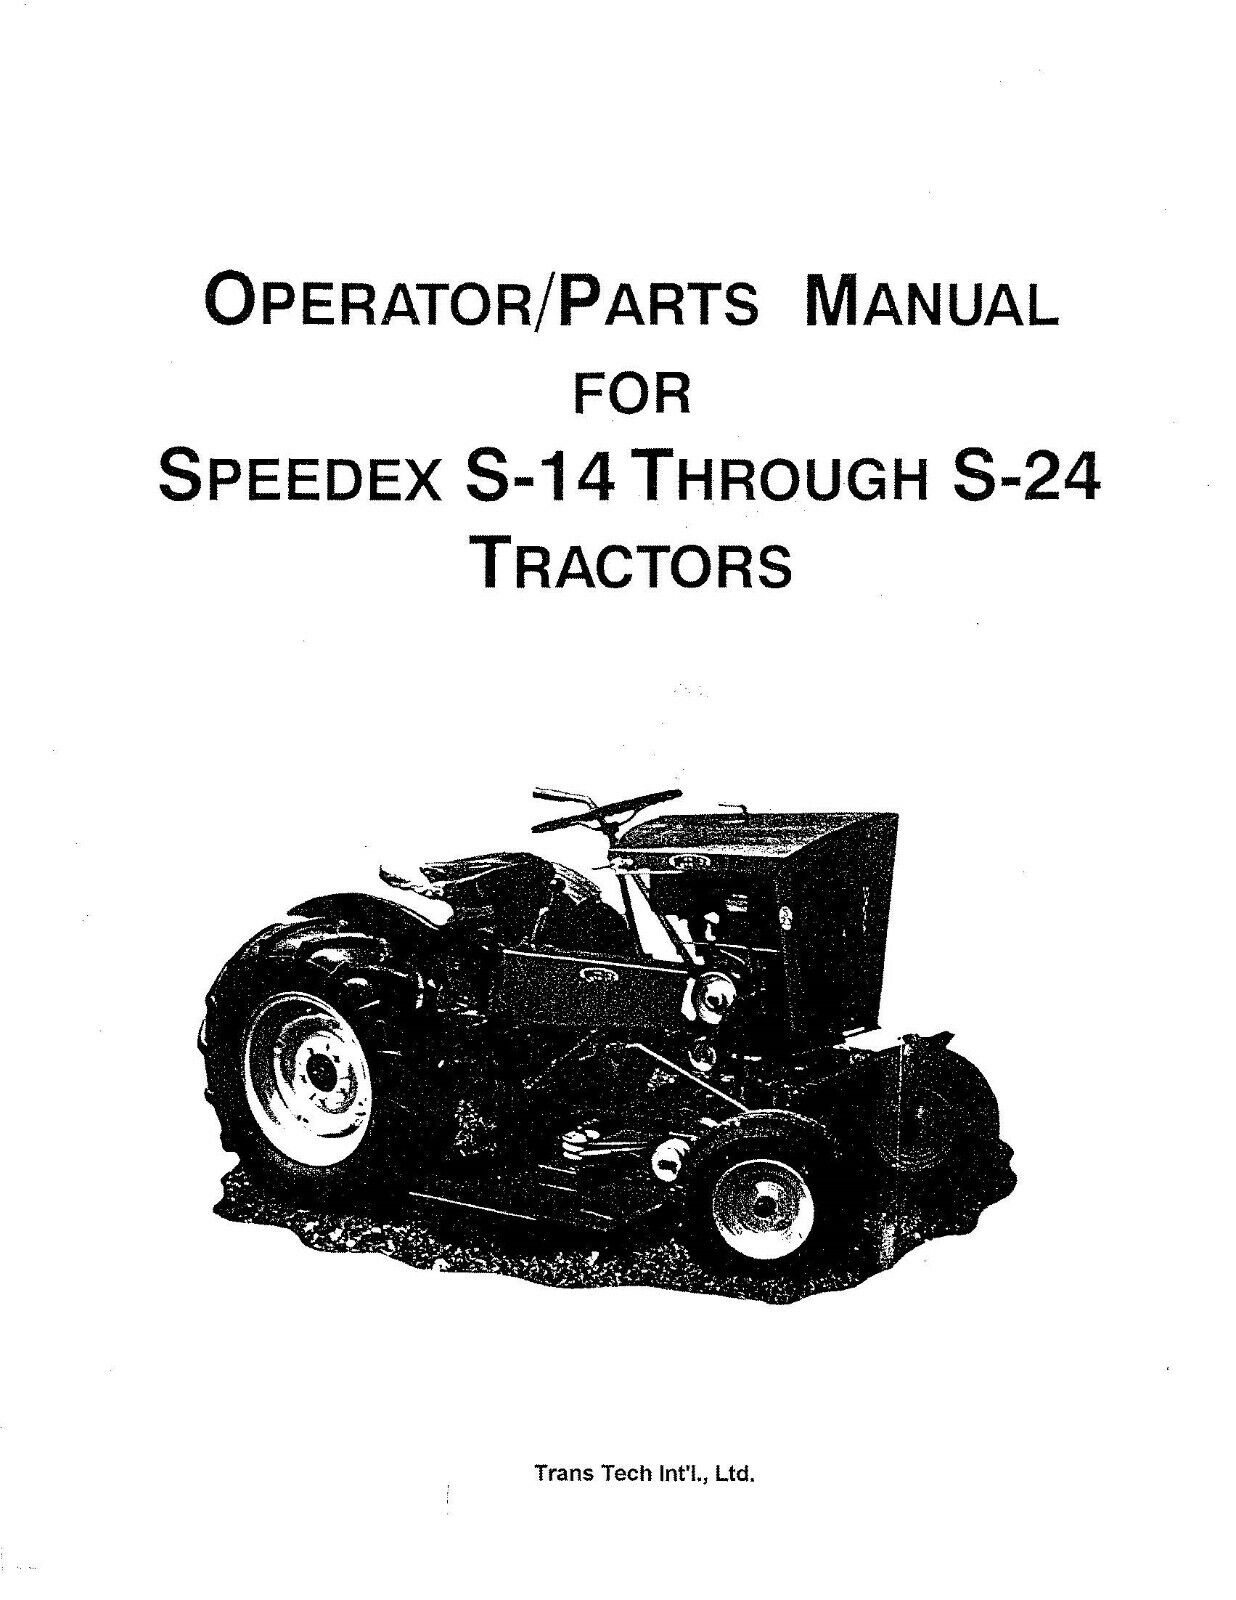 14 24 Tractor Operator & Service Parts Manual Speedex S-14-S-24 Garden Tractors